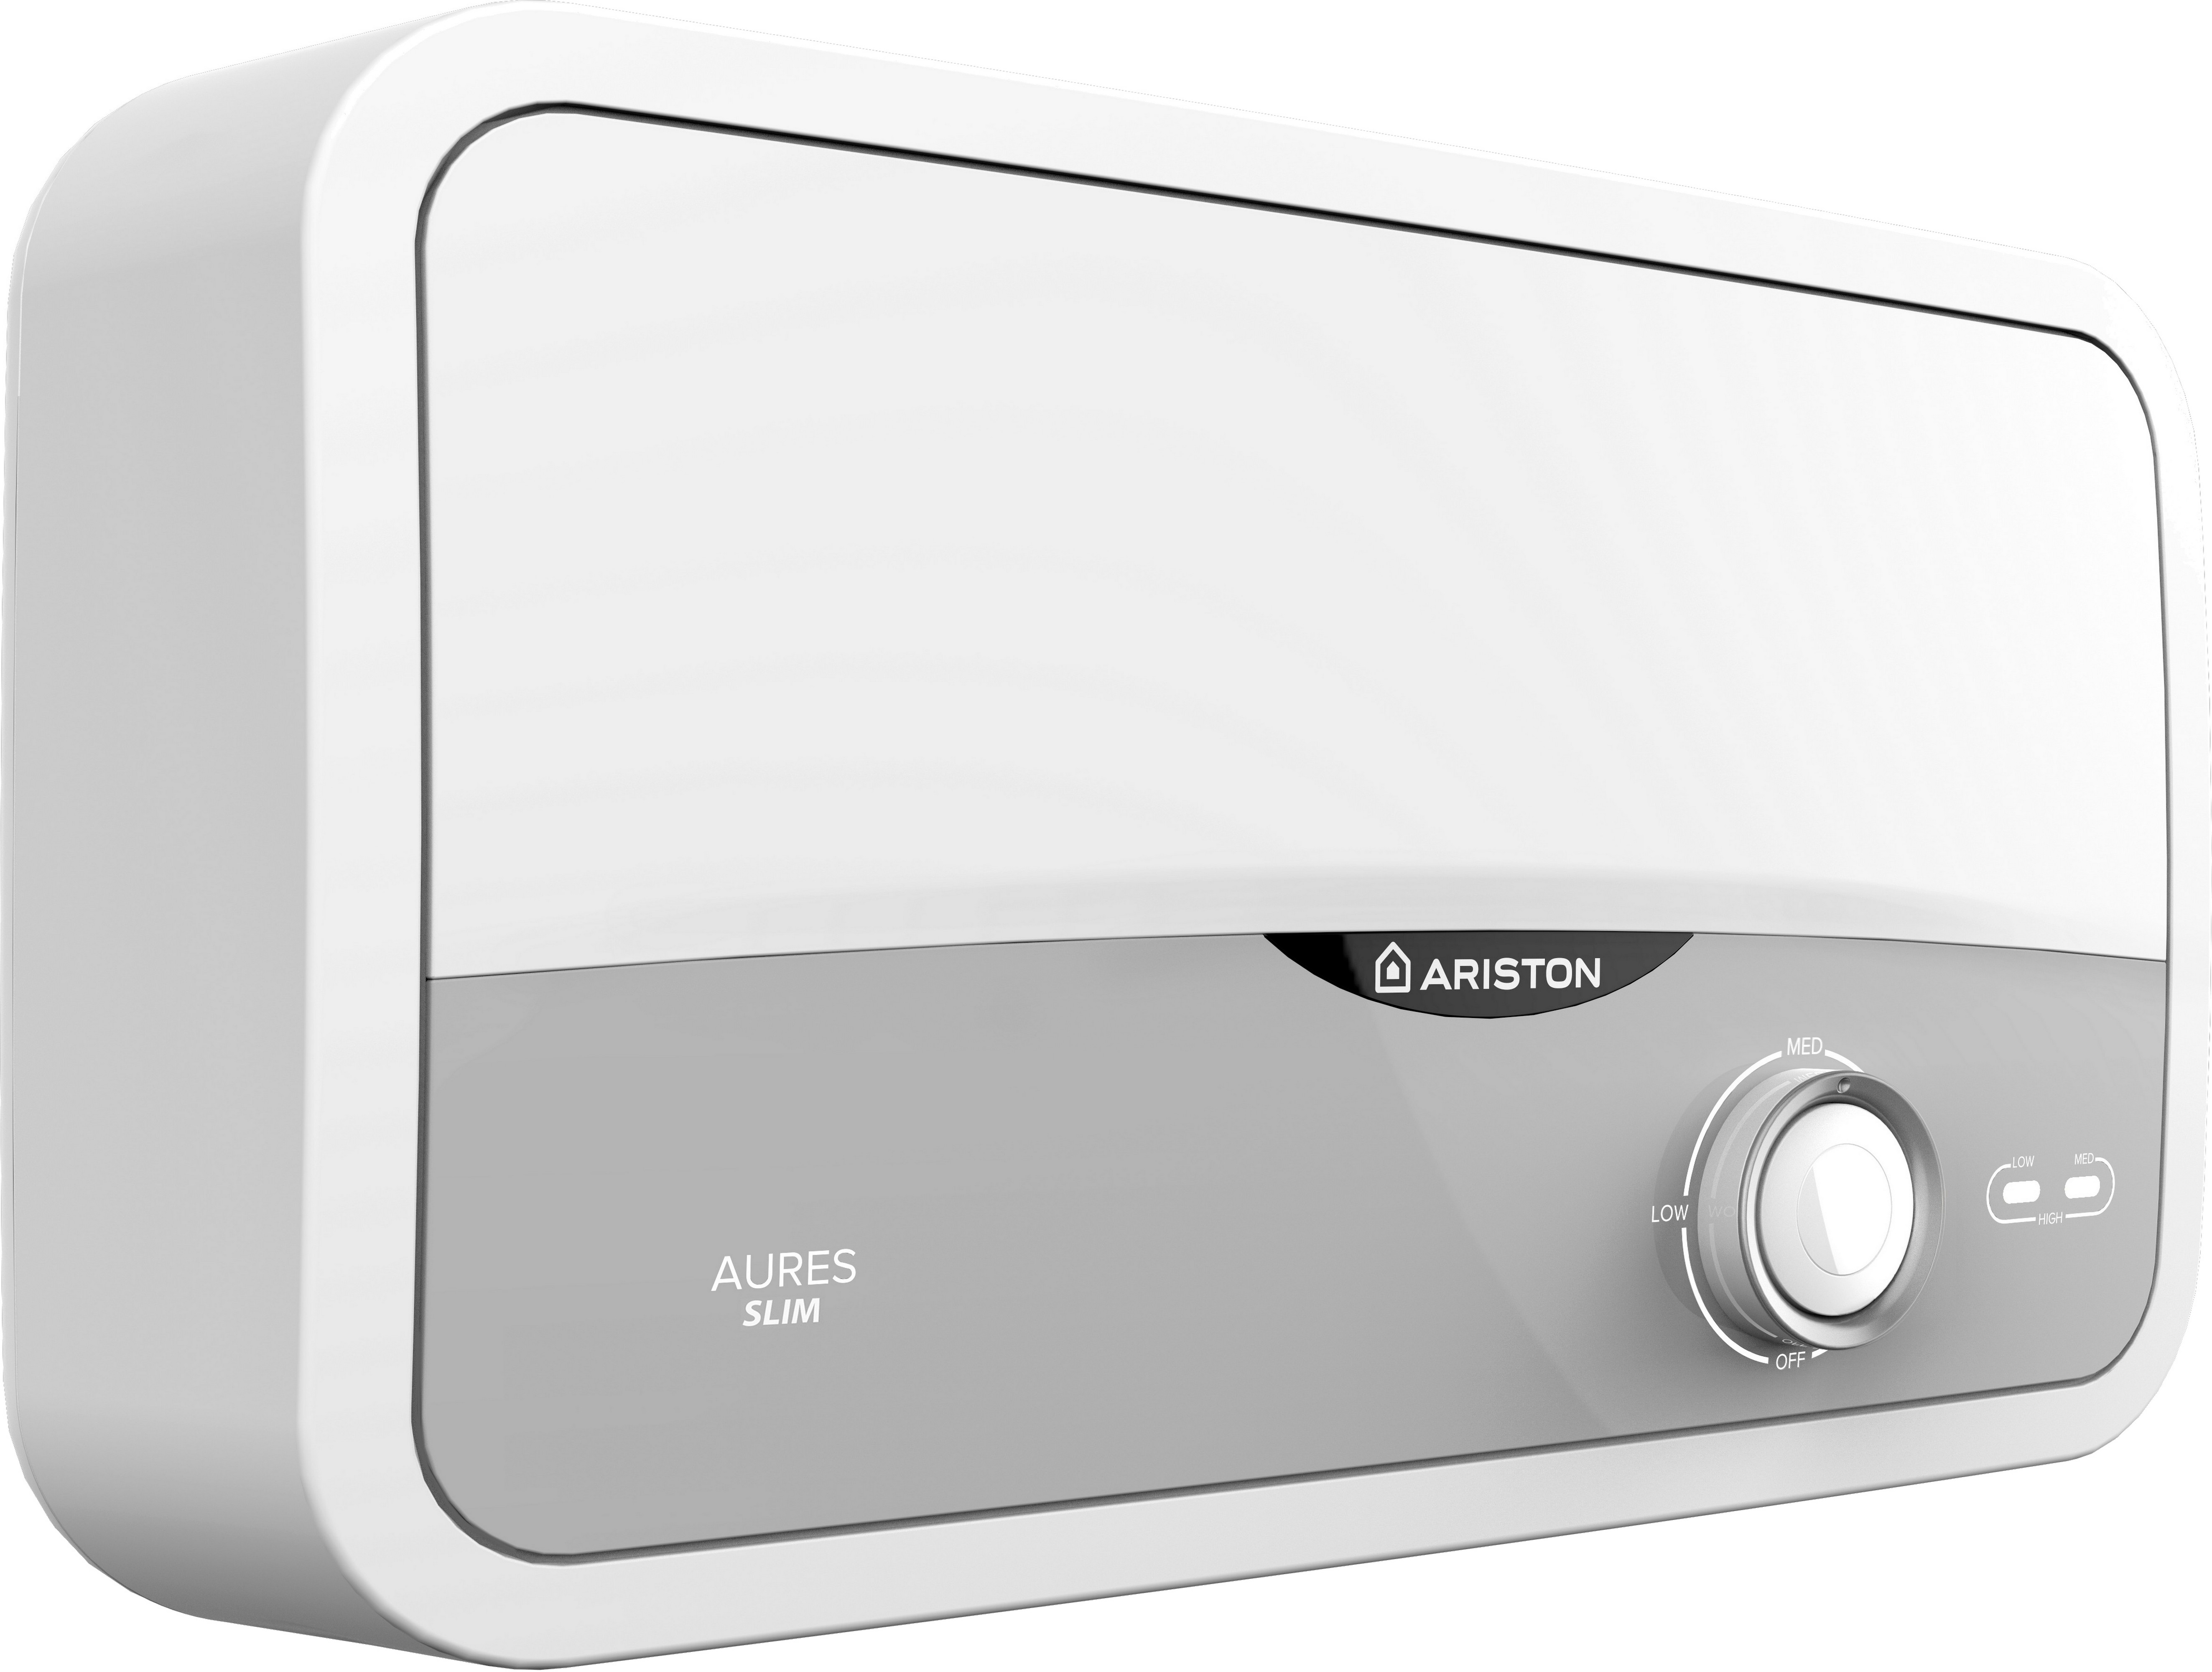 Проточный водонагреватель Ariston Aures S 3.5 SH PL цена 0.00 грн - фотография 2